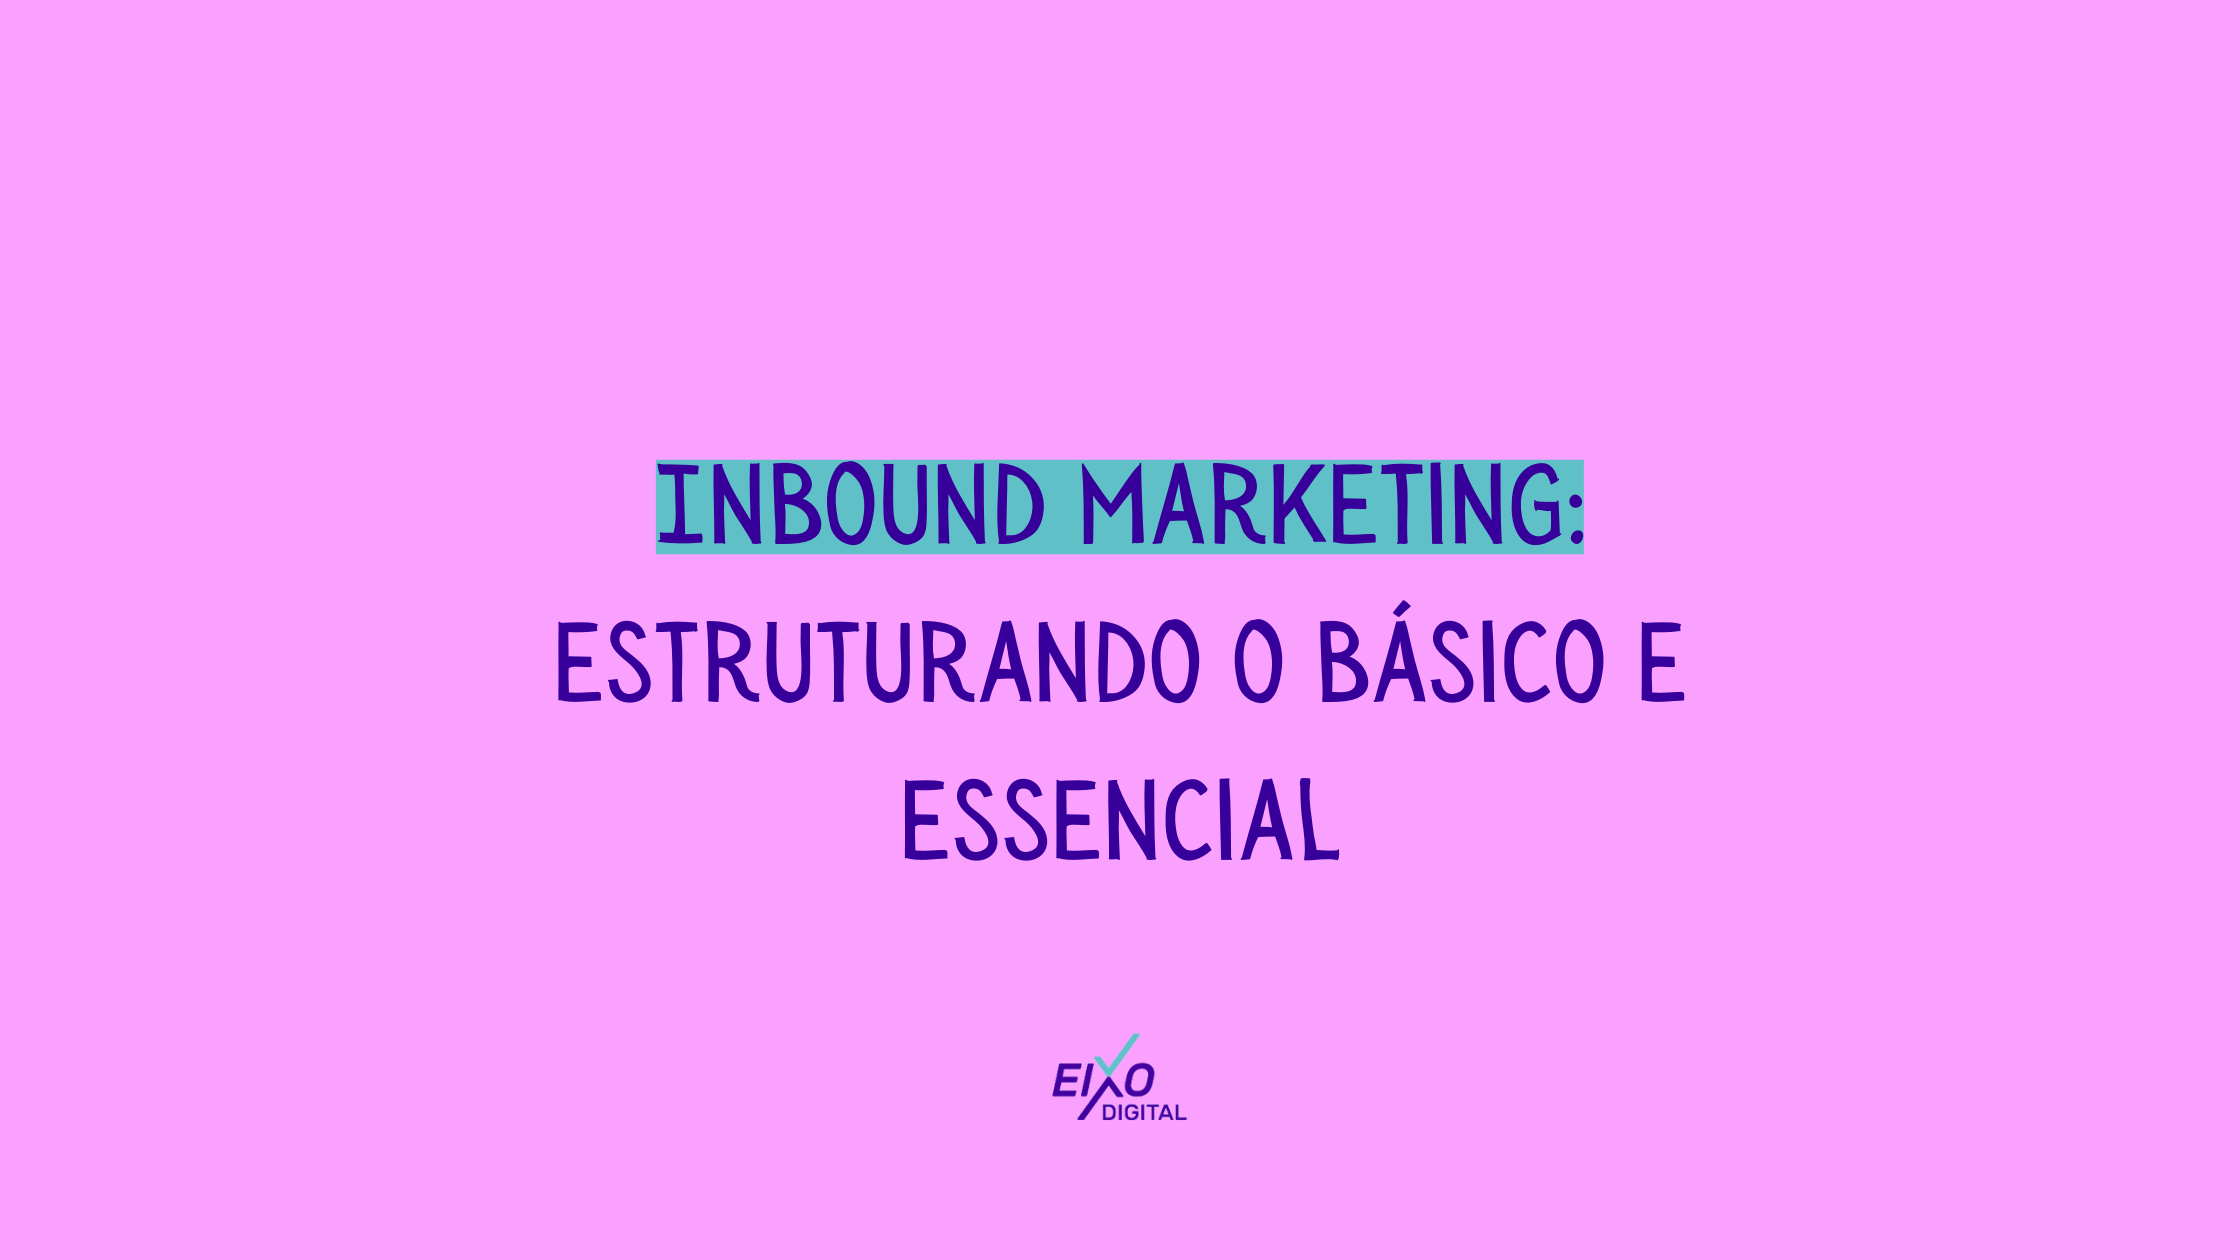 Inbound Marketing: estruturando o básico e essencial